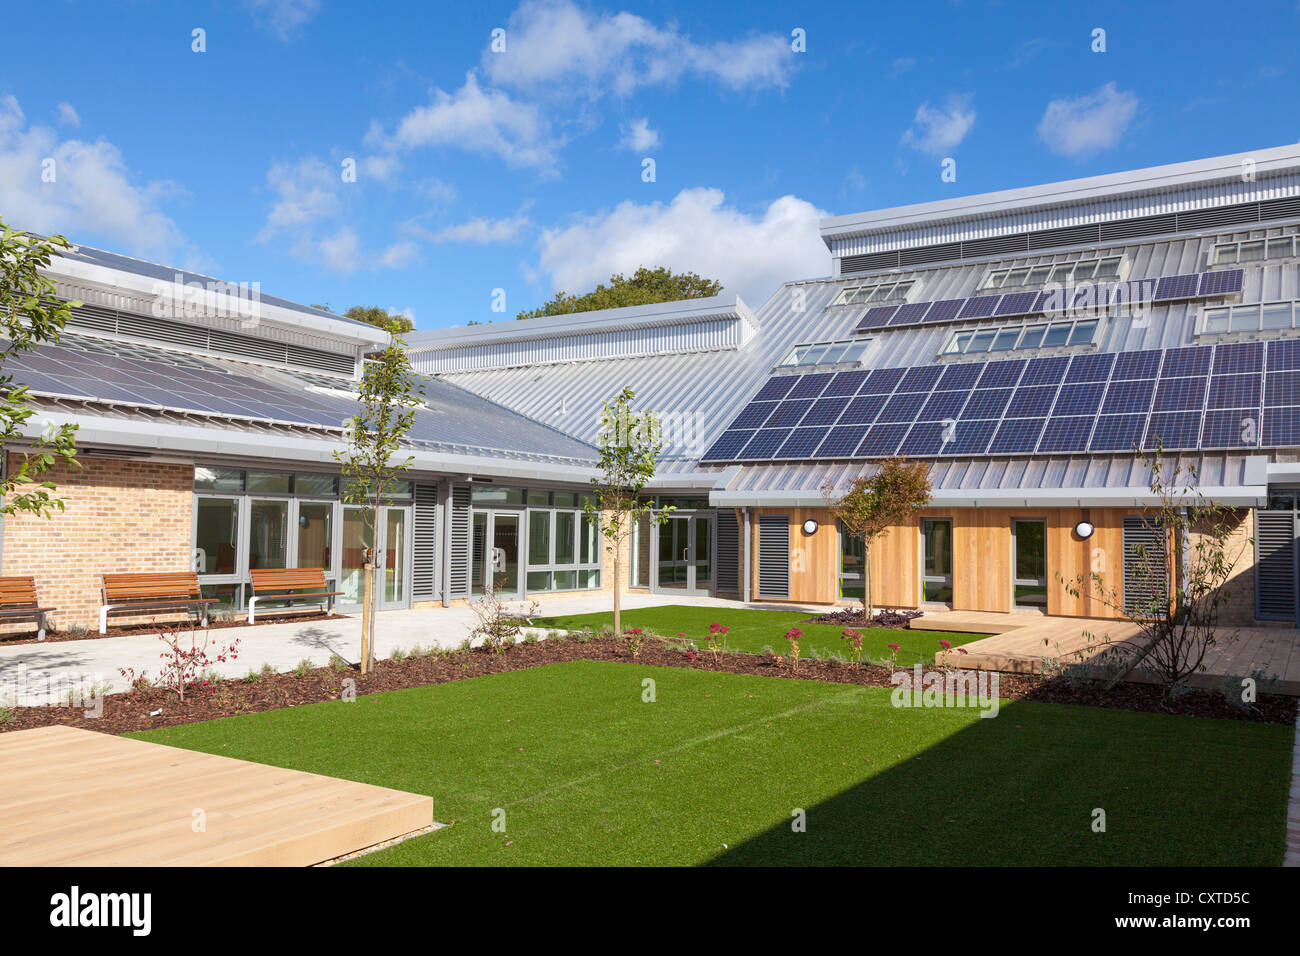 Cour de l'école primaire de nouvelle construction avec des panneaux solaires dans le soleil. Banque D'Images